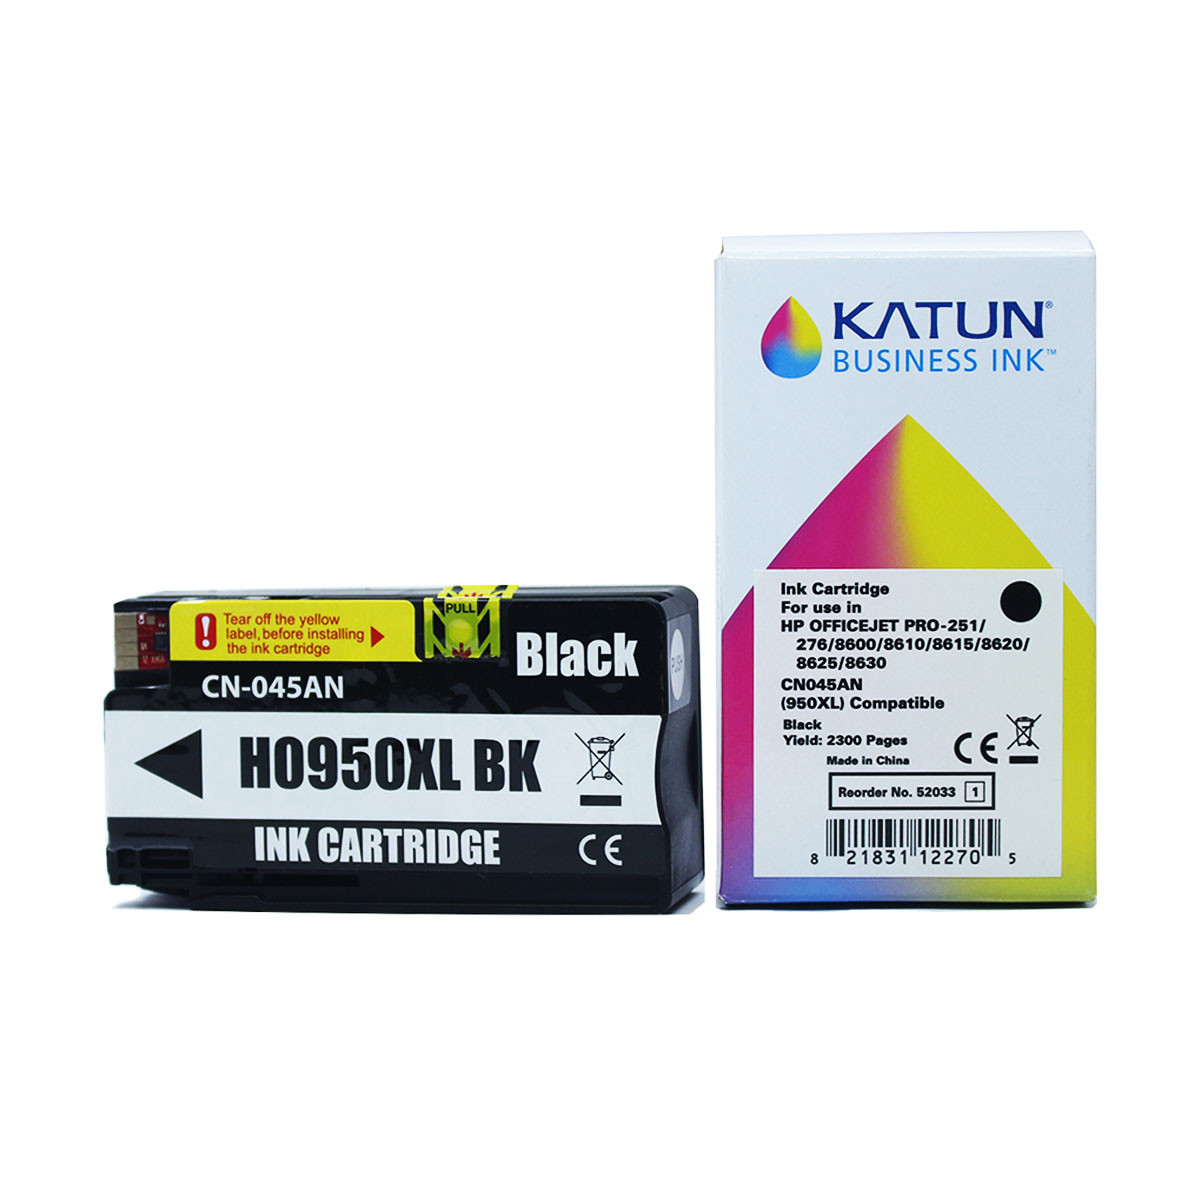 Cartucho de Tinta Compatível com HP 950XL Preto CN045AL | Officejet 251DW 276DW| Katun Business Ink